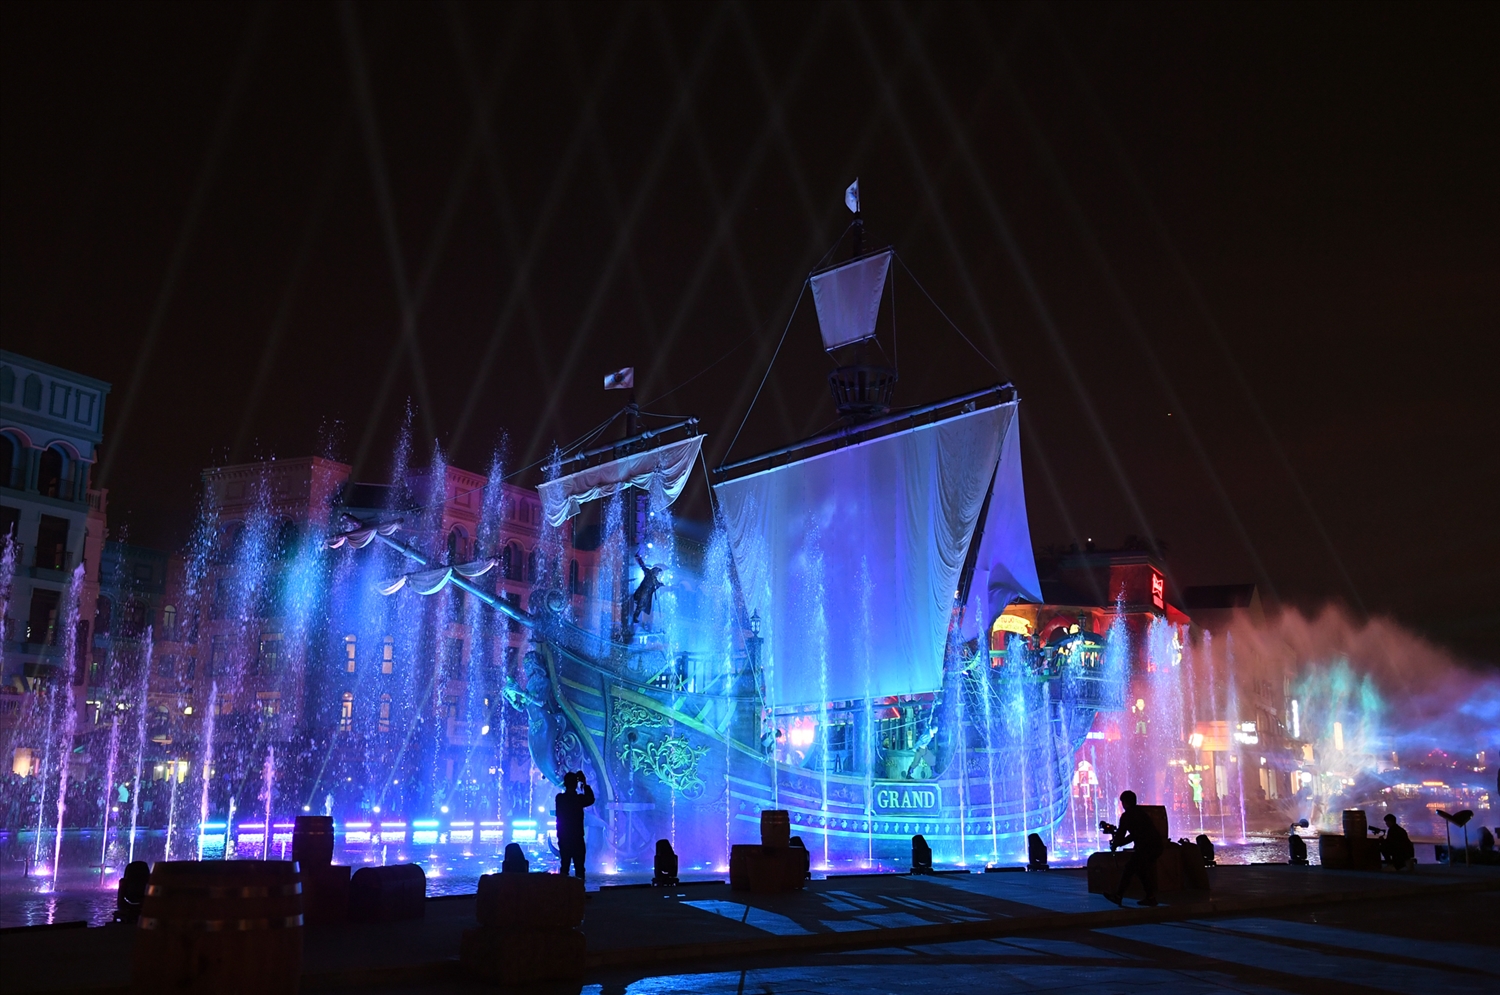 Mãn nhãn với show thực cảnh 3D mapping trên sân khấu thuyền lớn nhất châu Á tại Mega Grand world Hà Nội 1